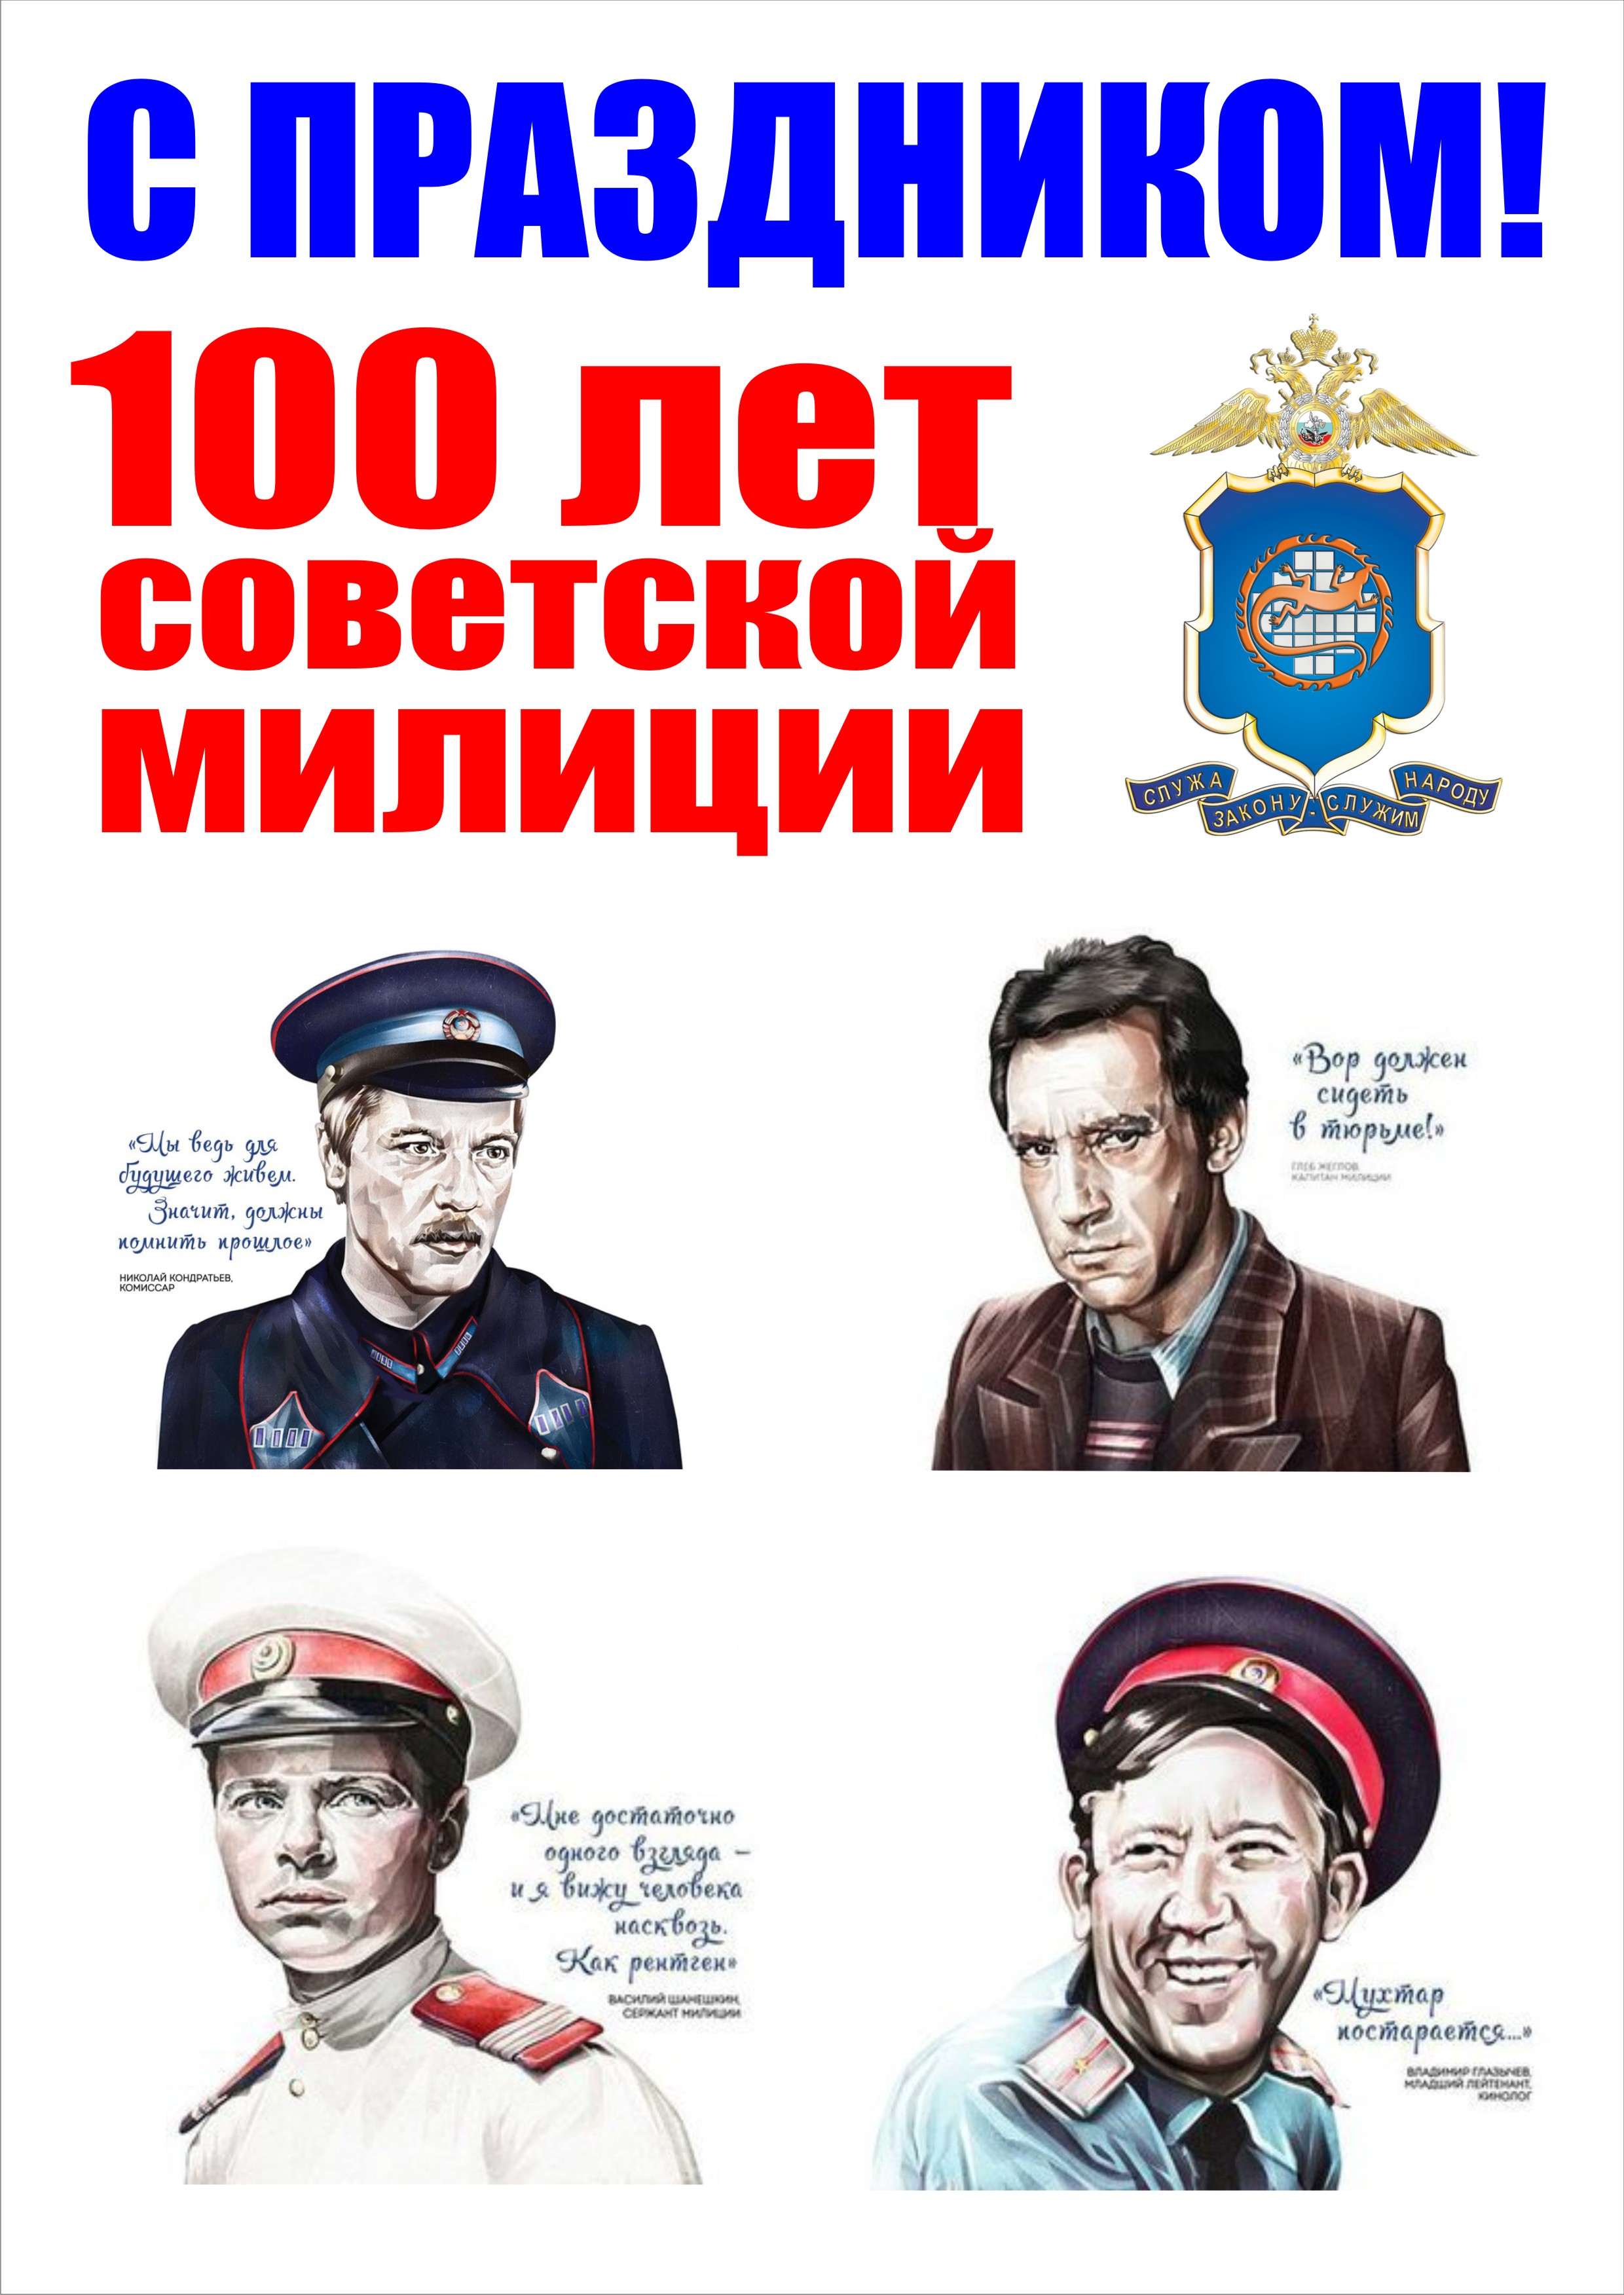 Советская Милиция Поздравления